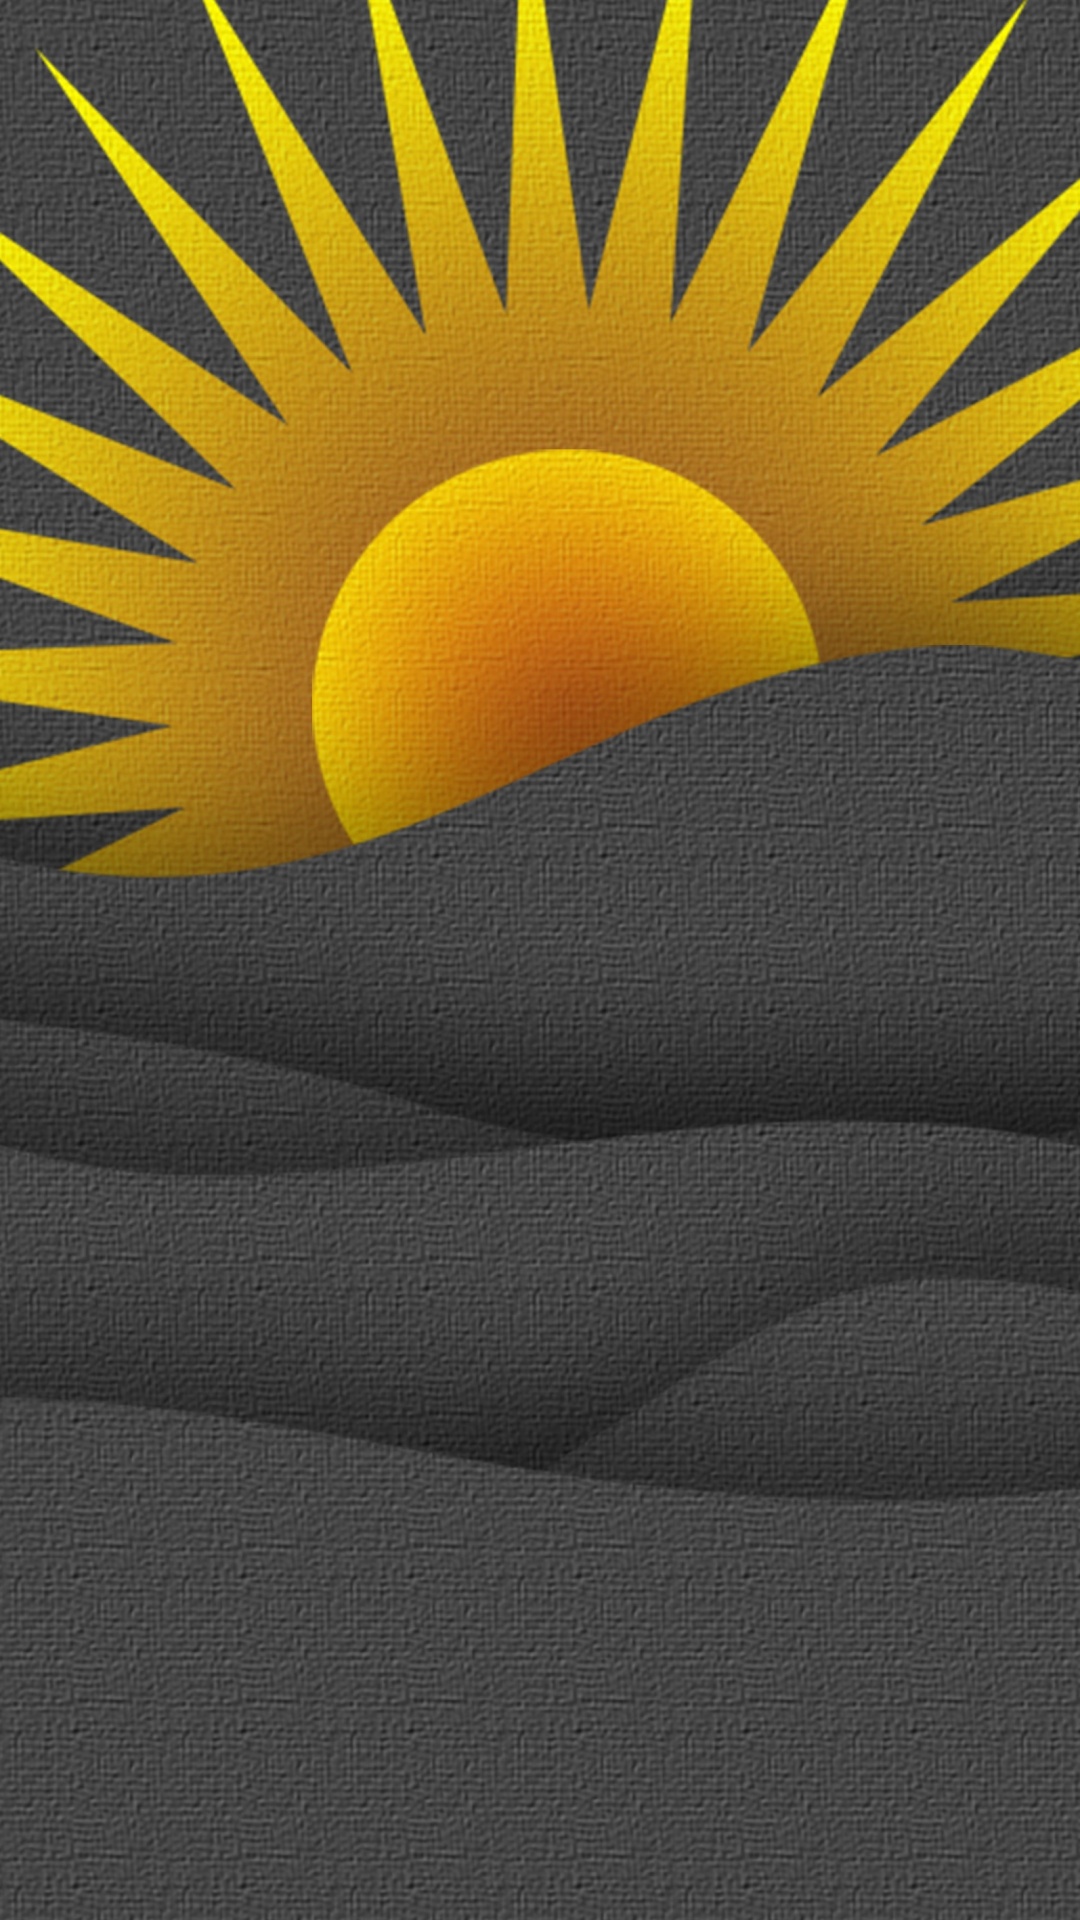 Sonne Auf Schwarzer Textilillustration. Wallpaper in 1080x1920 Resolution